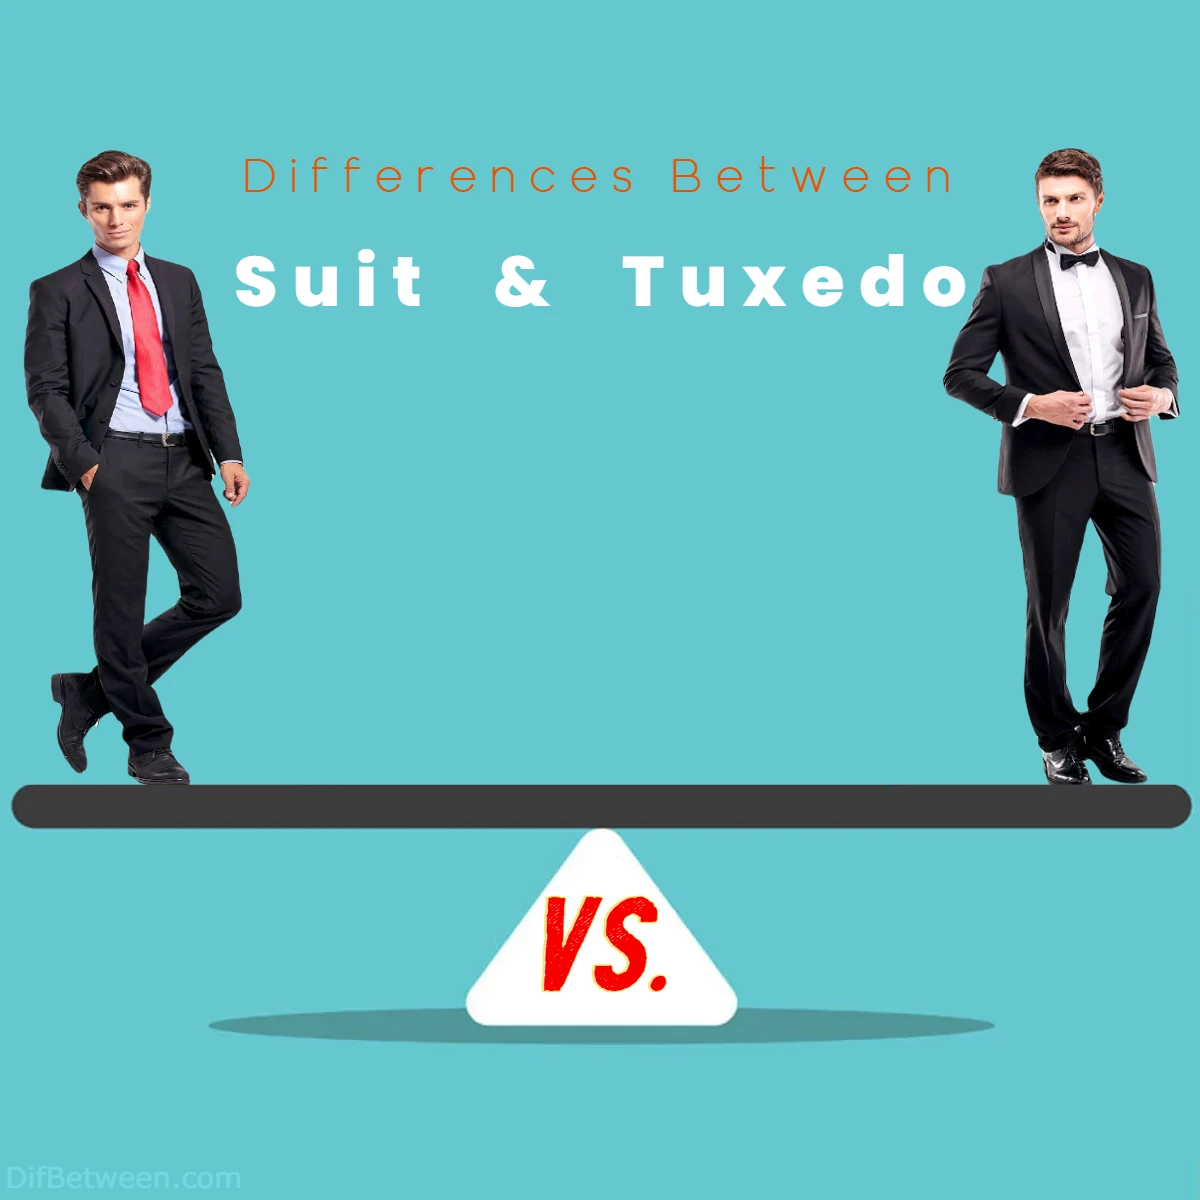 Differences Between Suit vs Tuxedo